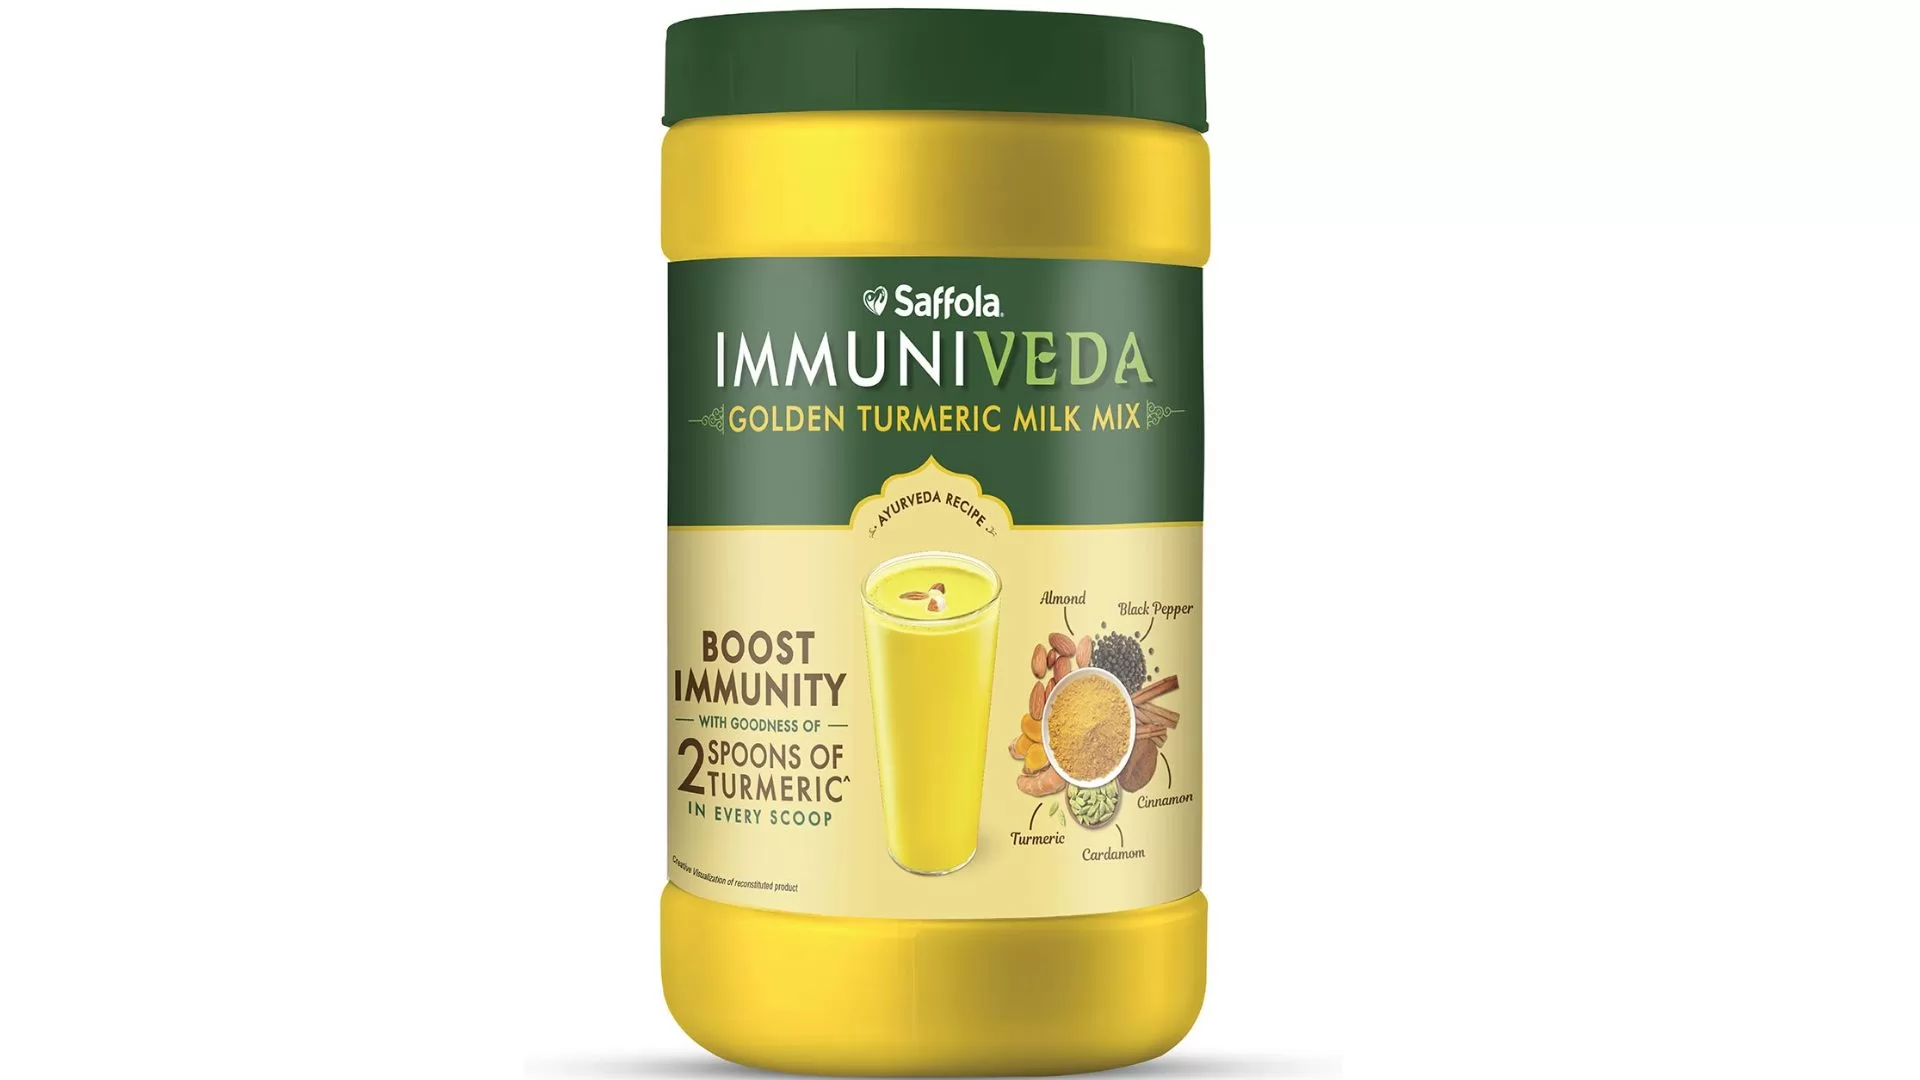 Saffola Immuniveda Golden Turmeric Milk Mix